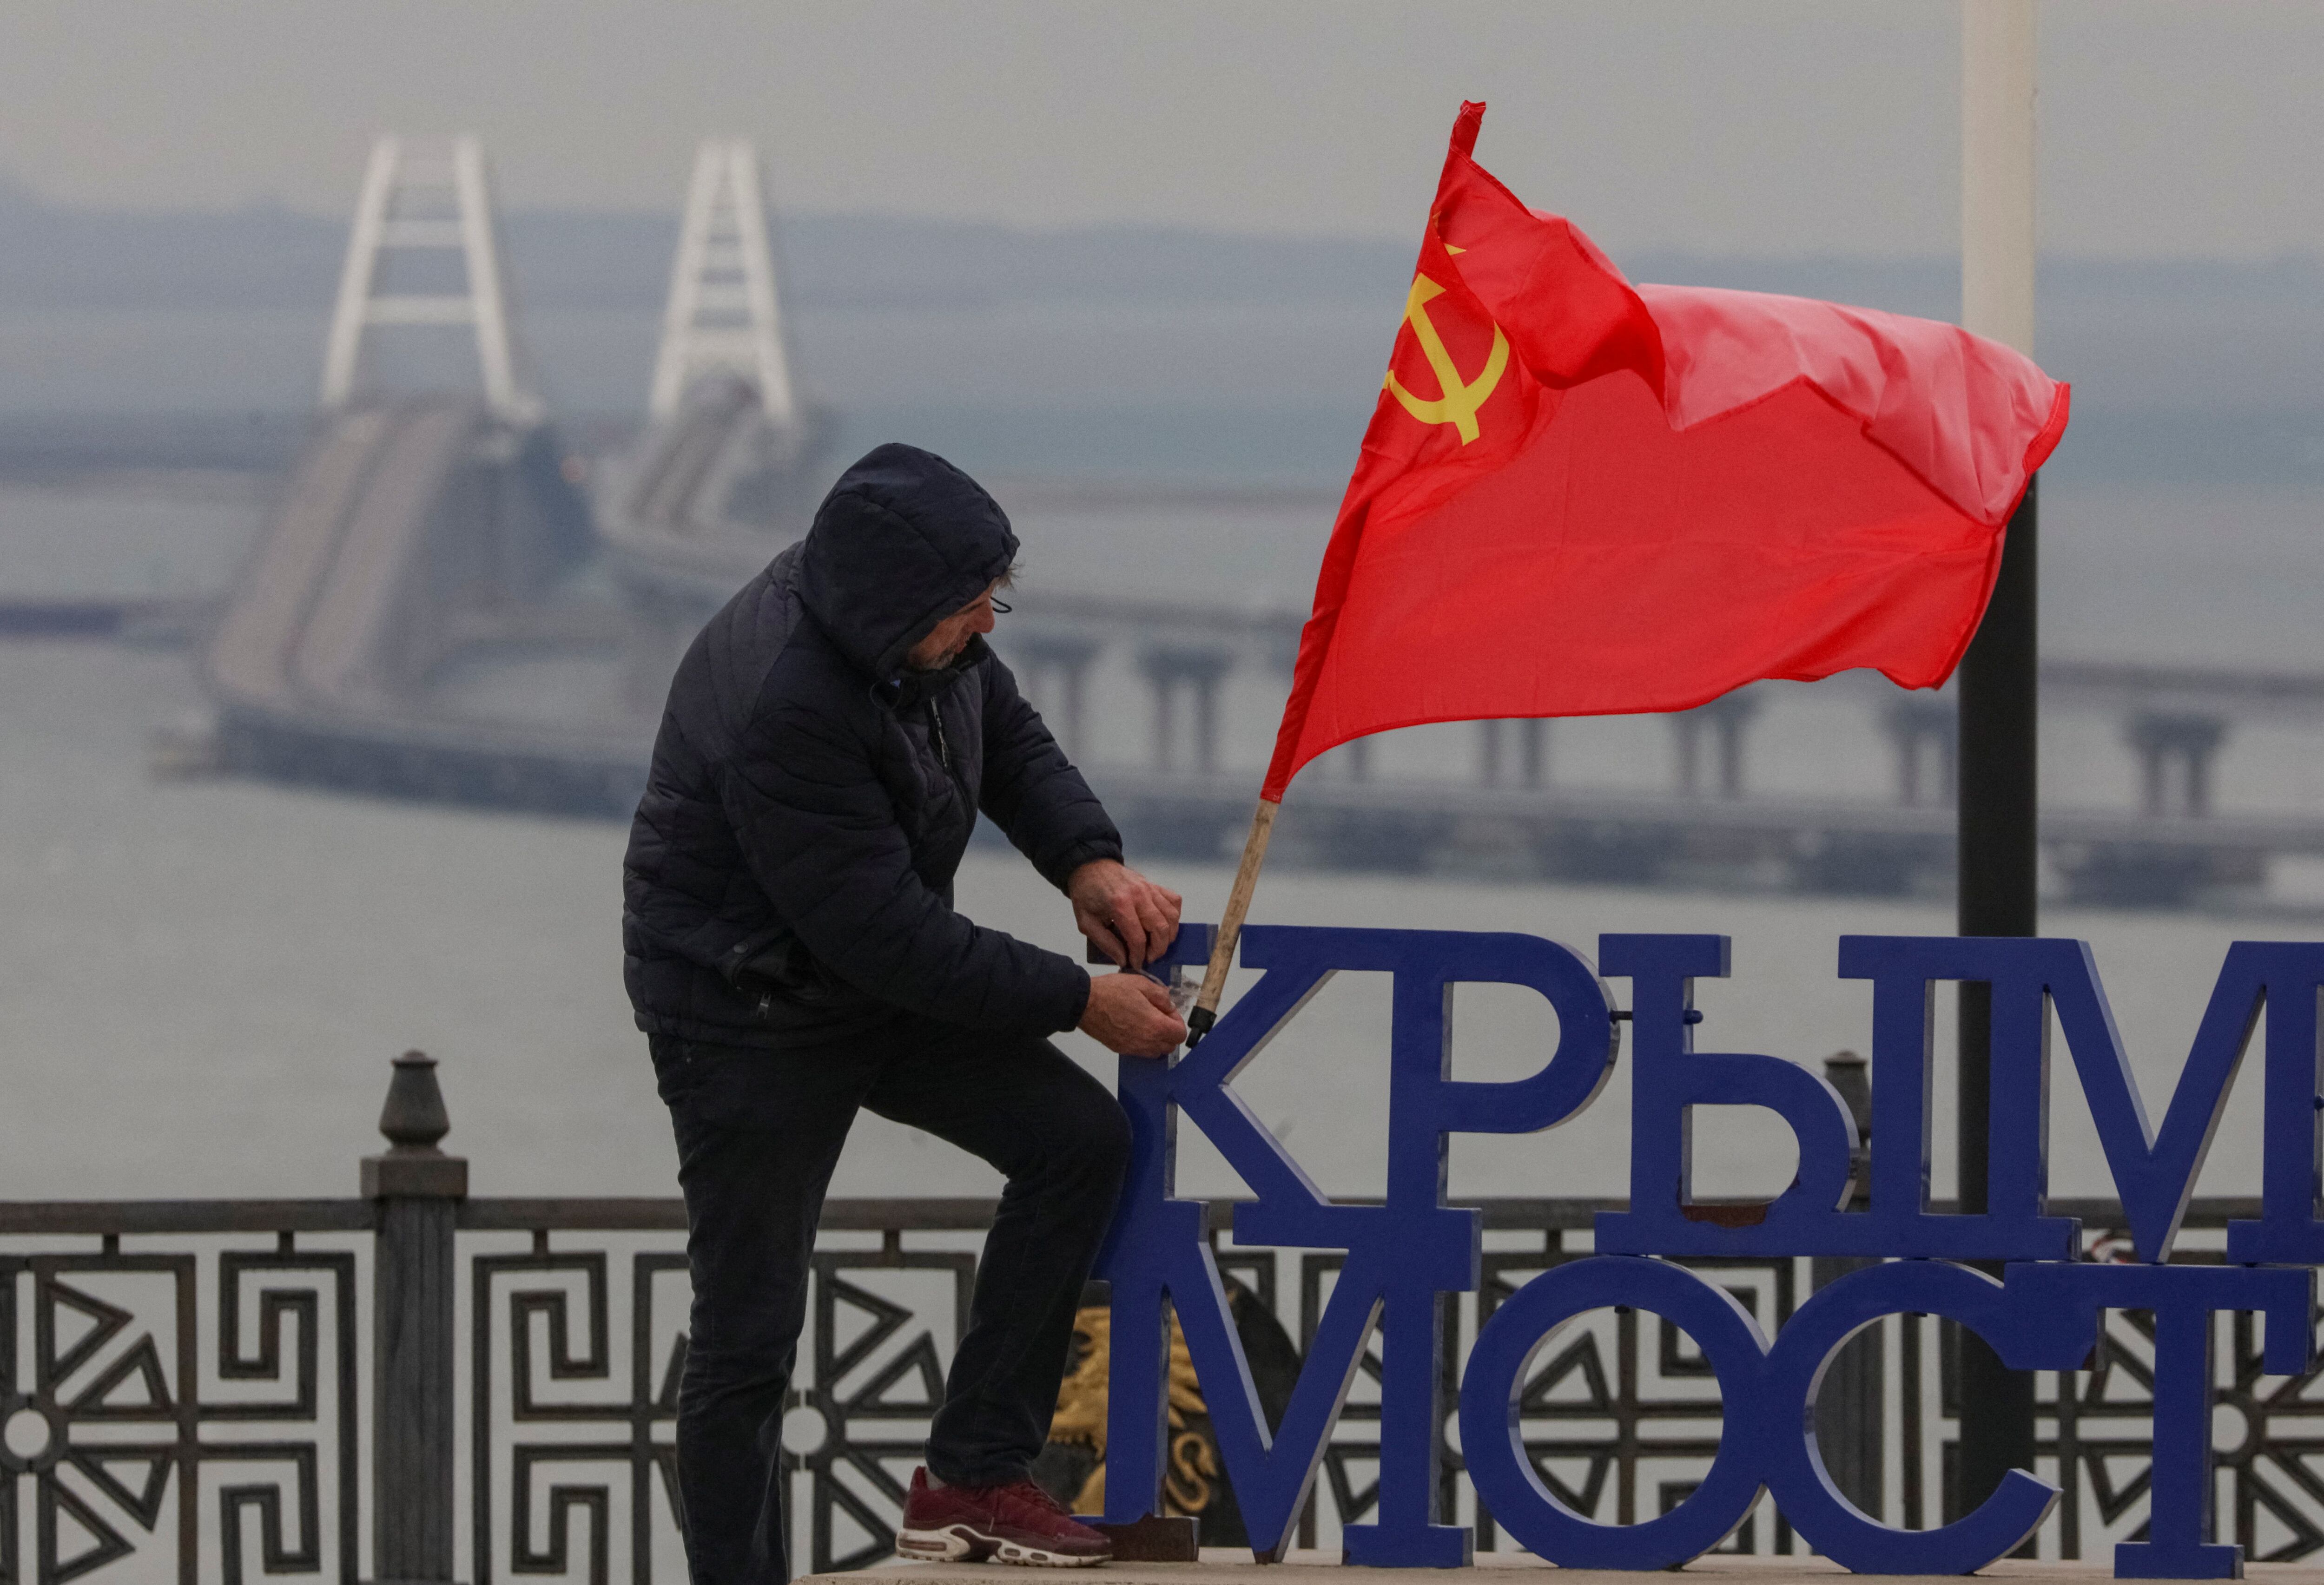 Un hombre pone una bandera soviética en un punto de observación, con el telón de fondo del puente de Crimea en el estrecho de Kerch. REUTERS/Alexey Pavlishak